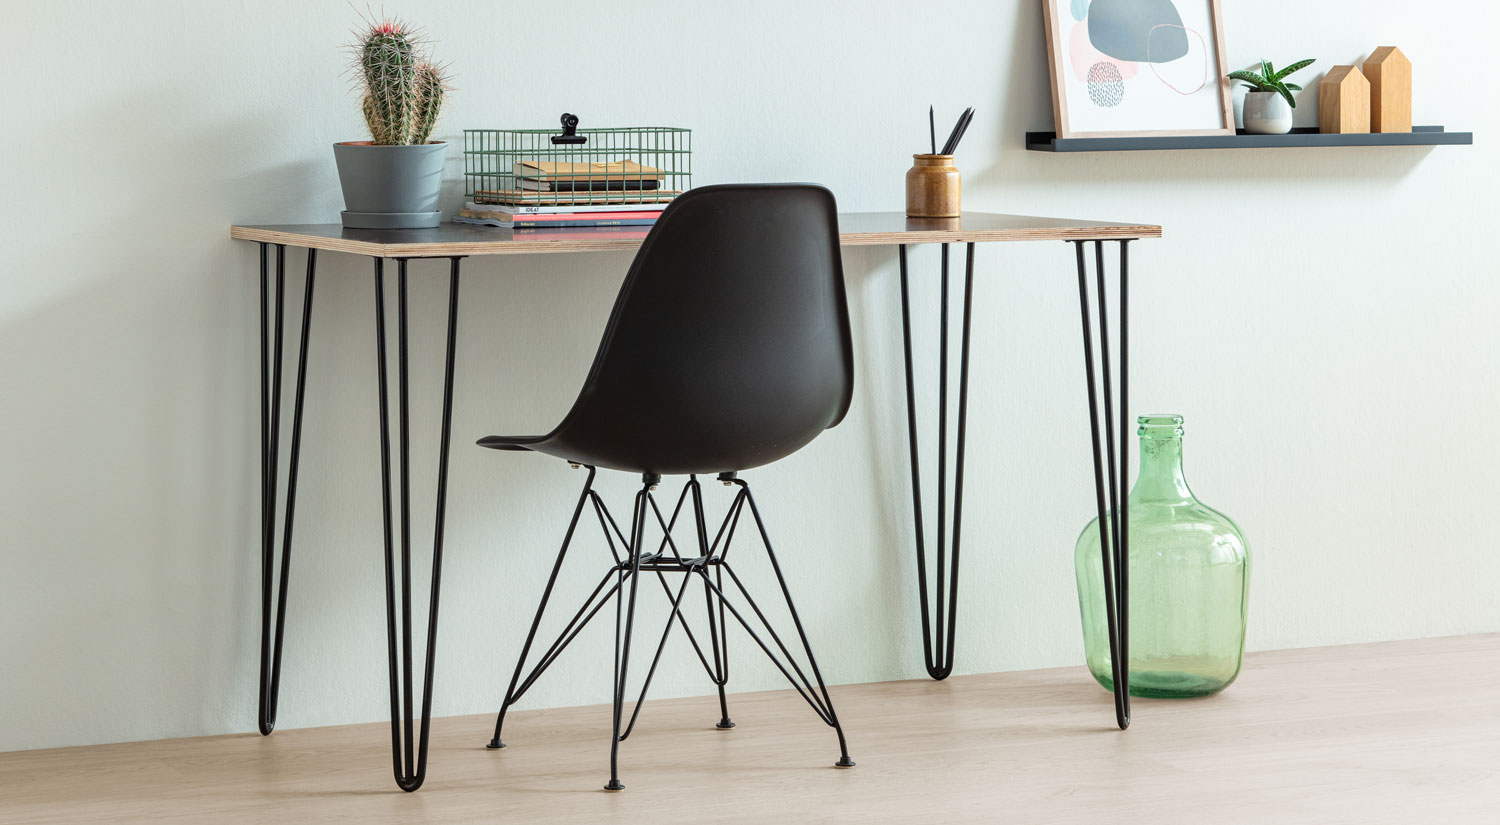 4 Stück Moderne DIY Metall Möbelfüße Hairpin Legs mit Bodenschoner & Schrauben für Schreibtisch Schrank Nachtständer Stühle Möbel Metall Tisch Beine 15cm 